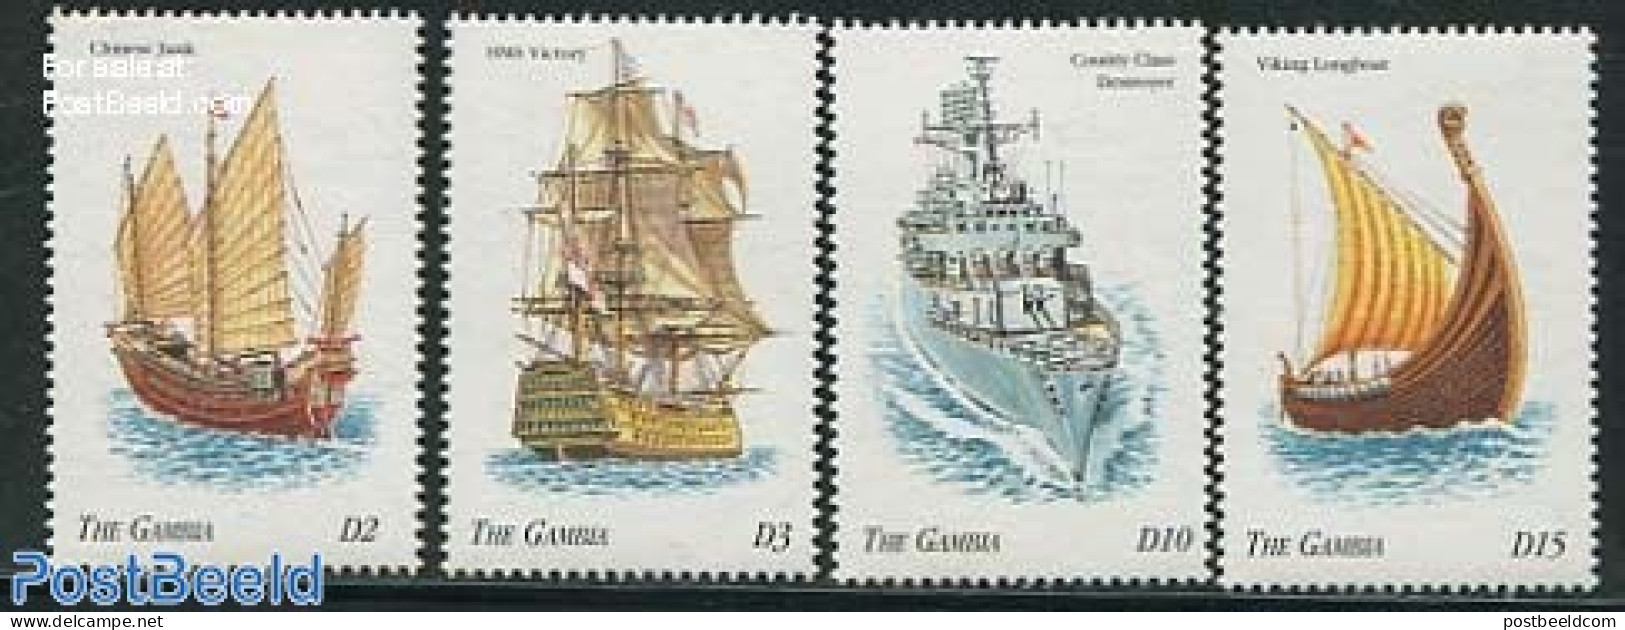 Gambia 1998 Ships 4v, Mint NH, Transport - Ships And Boats - Ships